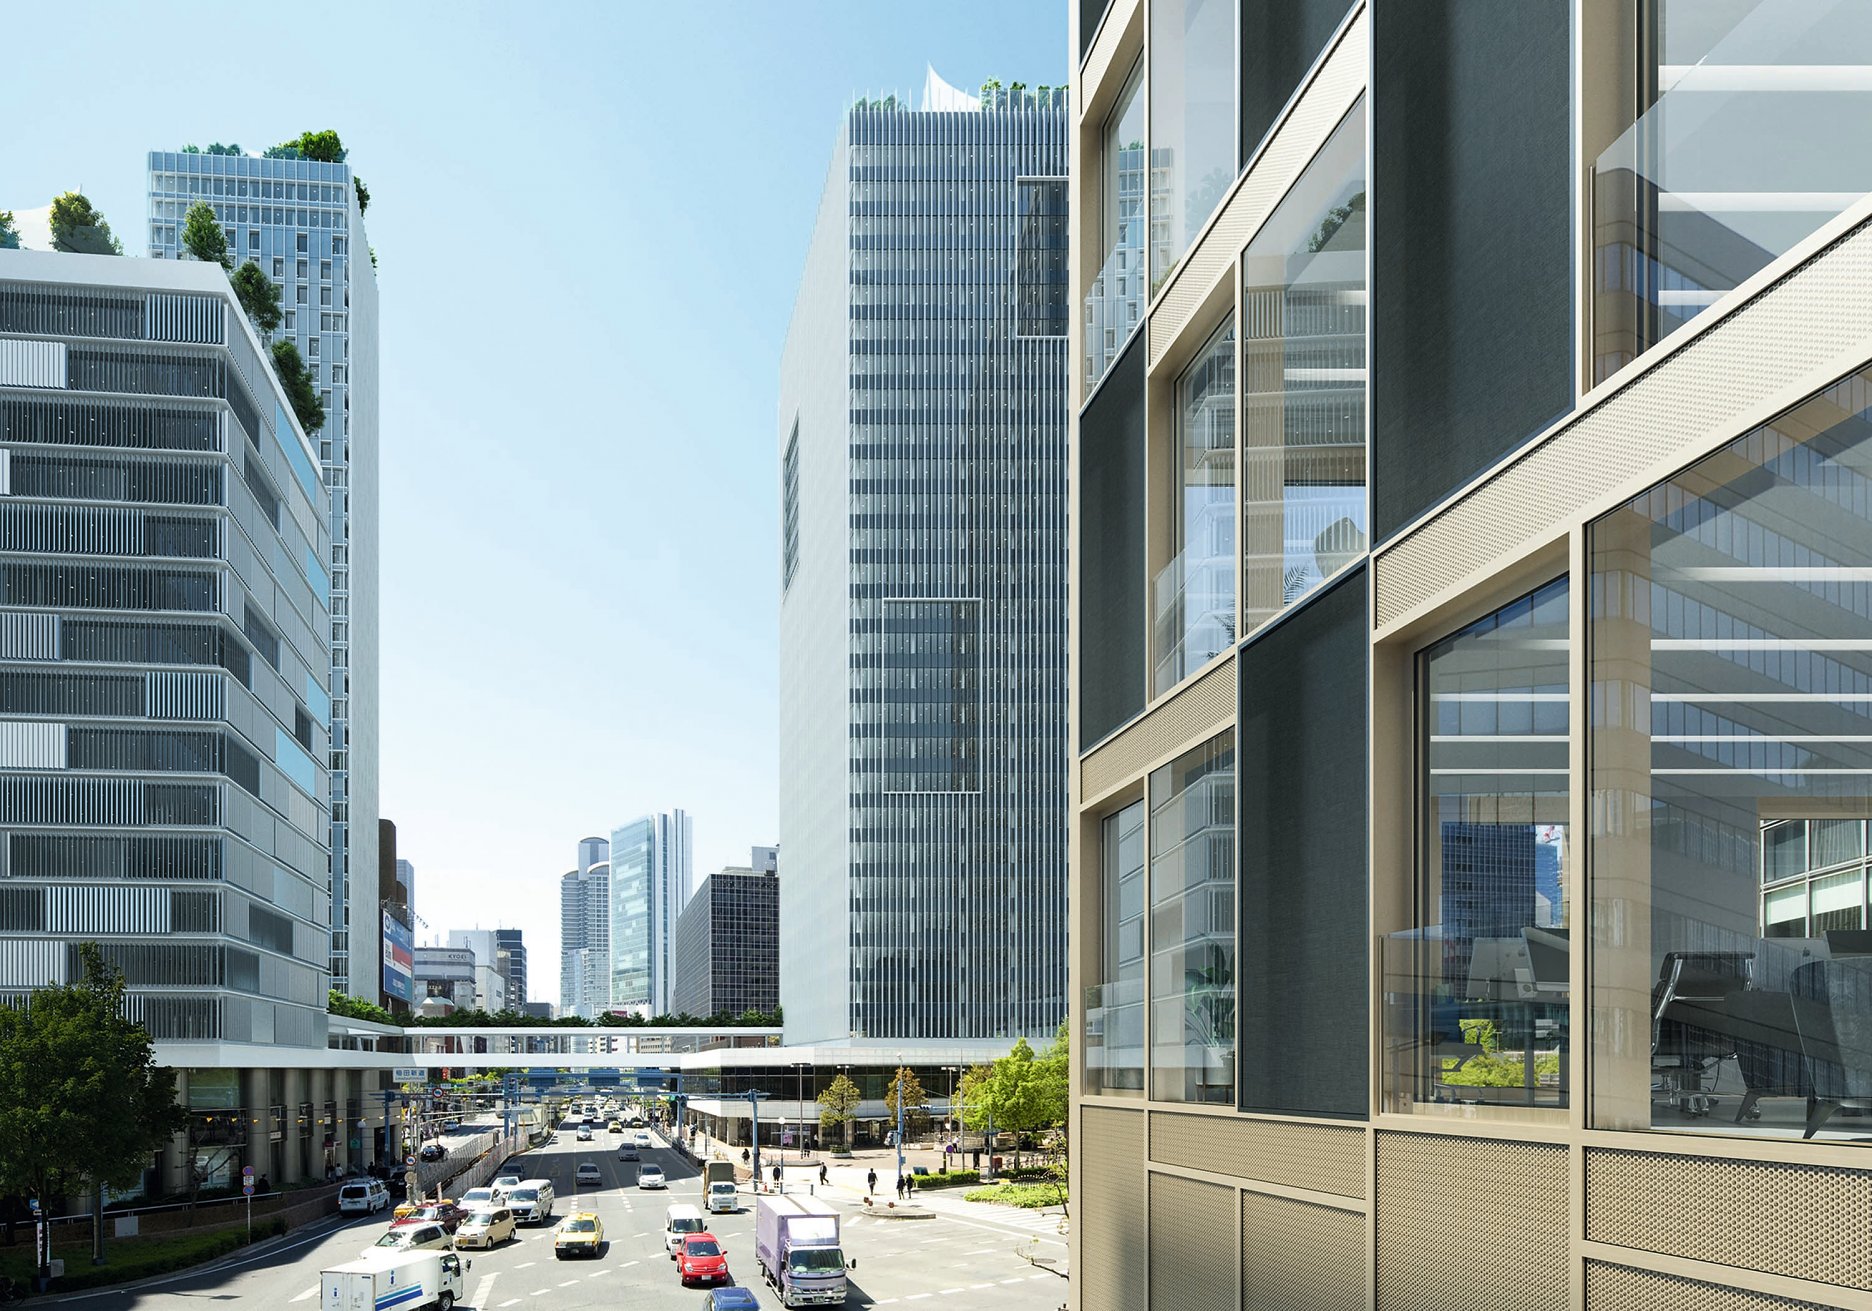 Schüco prototyp predstavený počas BAU 2019: Vonkajšie fasády pohlcujúce zvuk môžu významne prispieť k zníženiu šírenia hluku v mestských priestoroch.